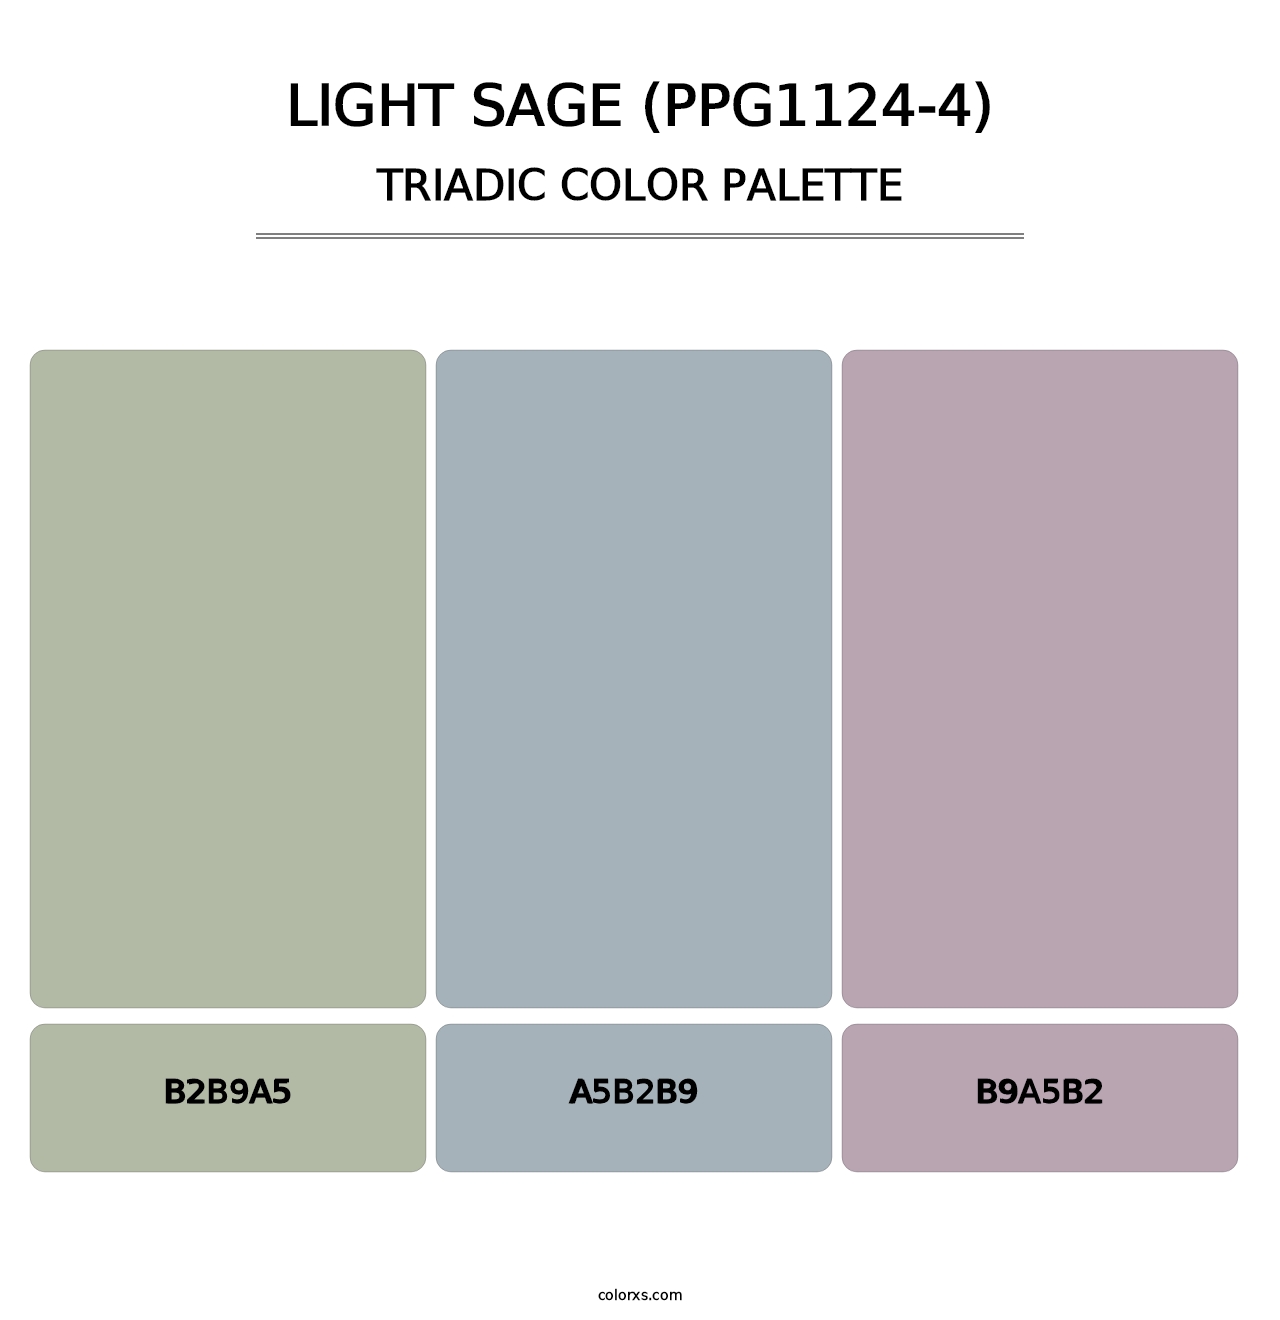 Light Sage (PPG1124-4) - Triadic Color Palette